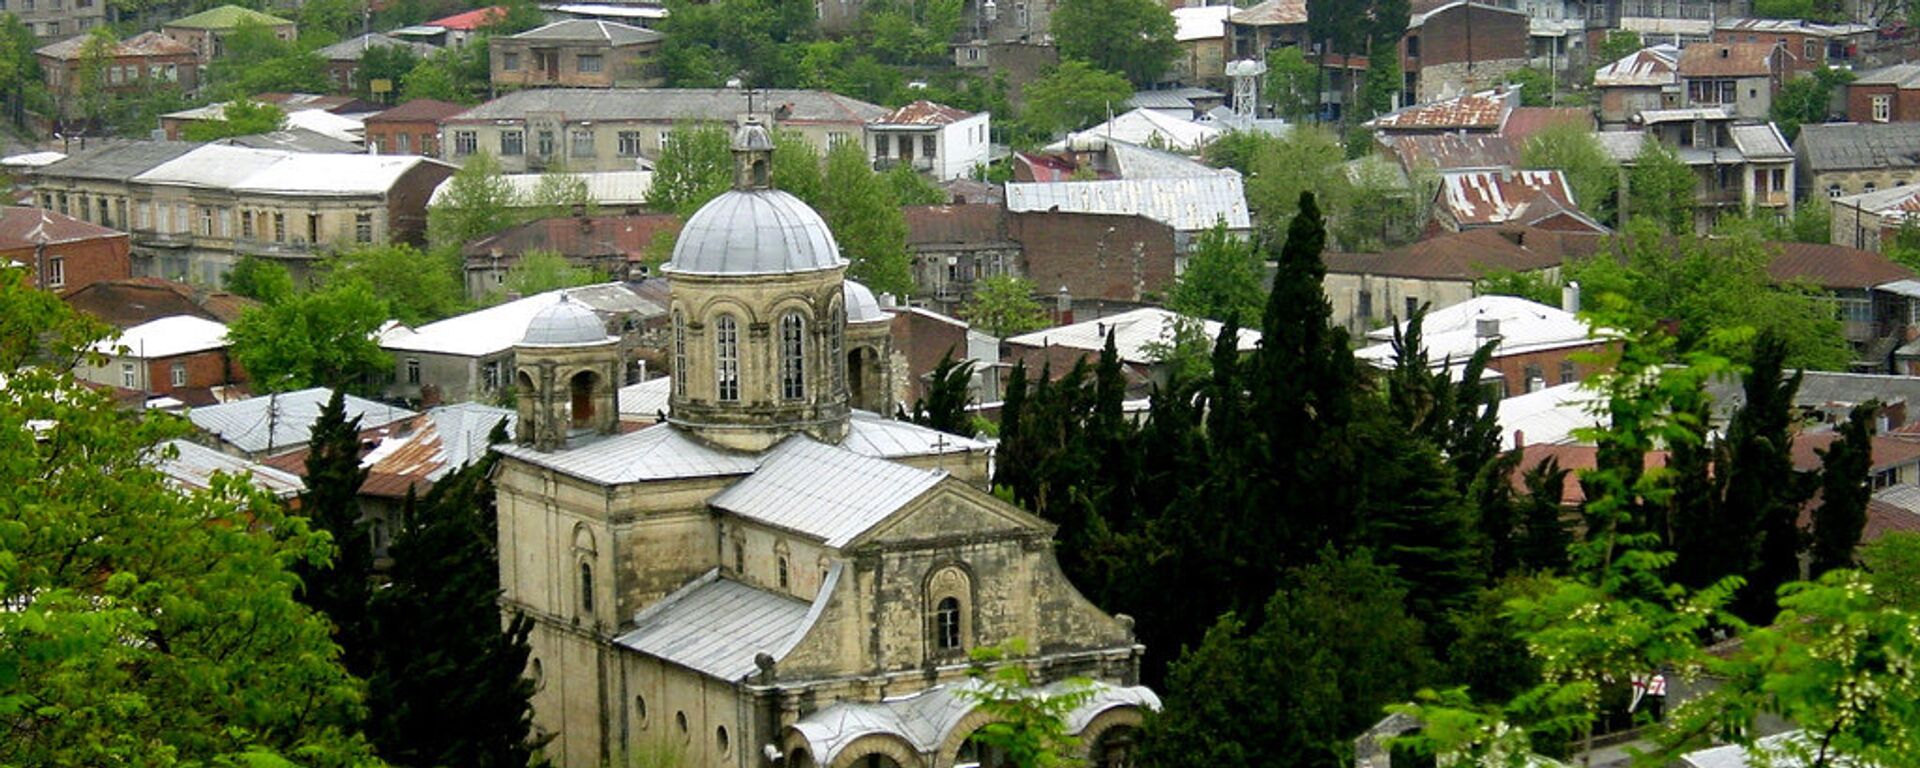 Общий вид на город Кутаиси - Sputnik Грузия, 1920, 05.05.2021